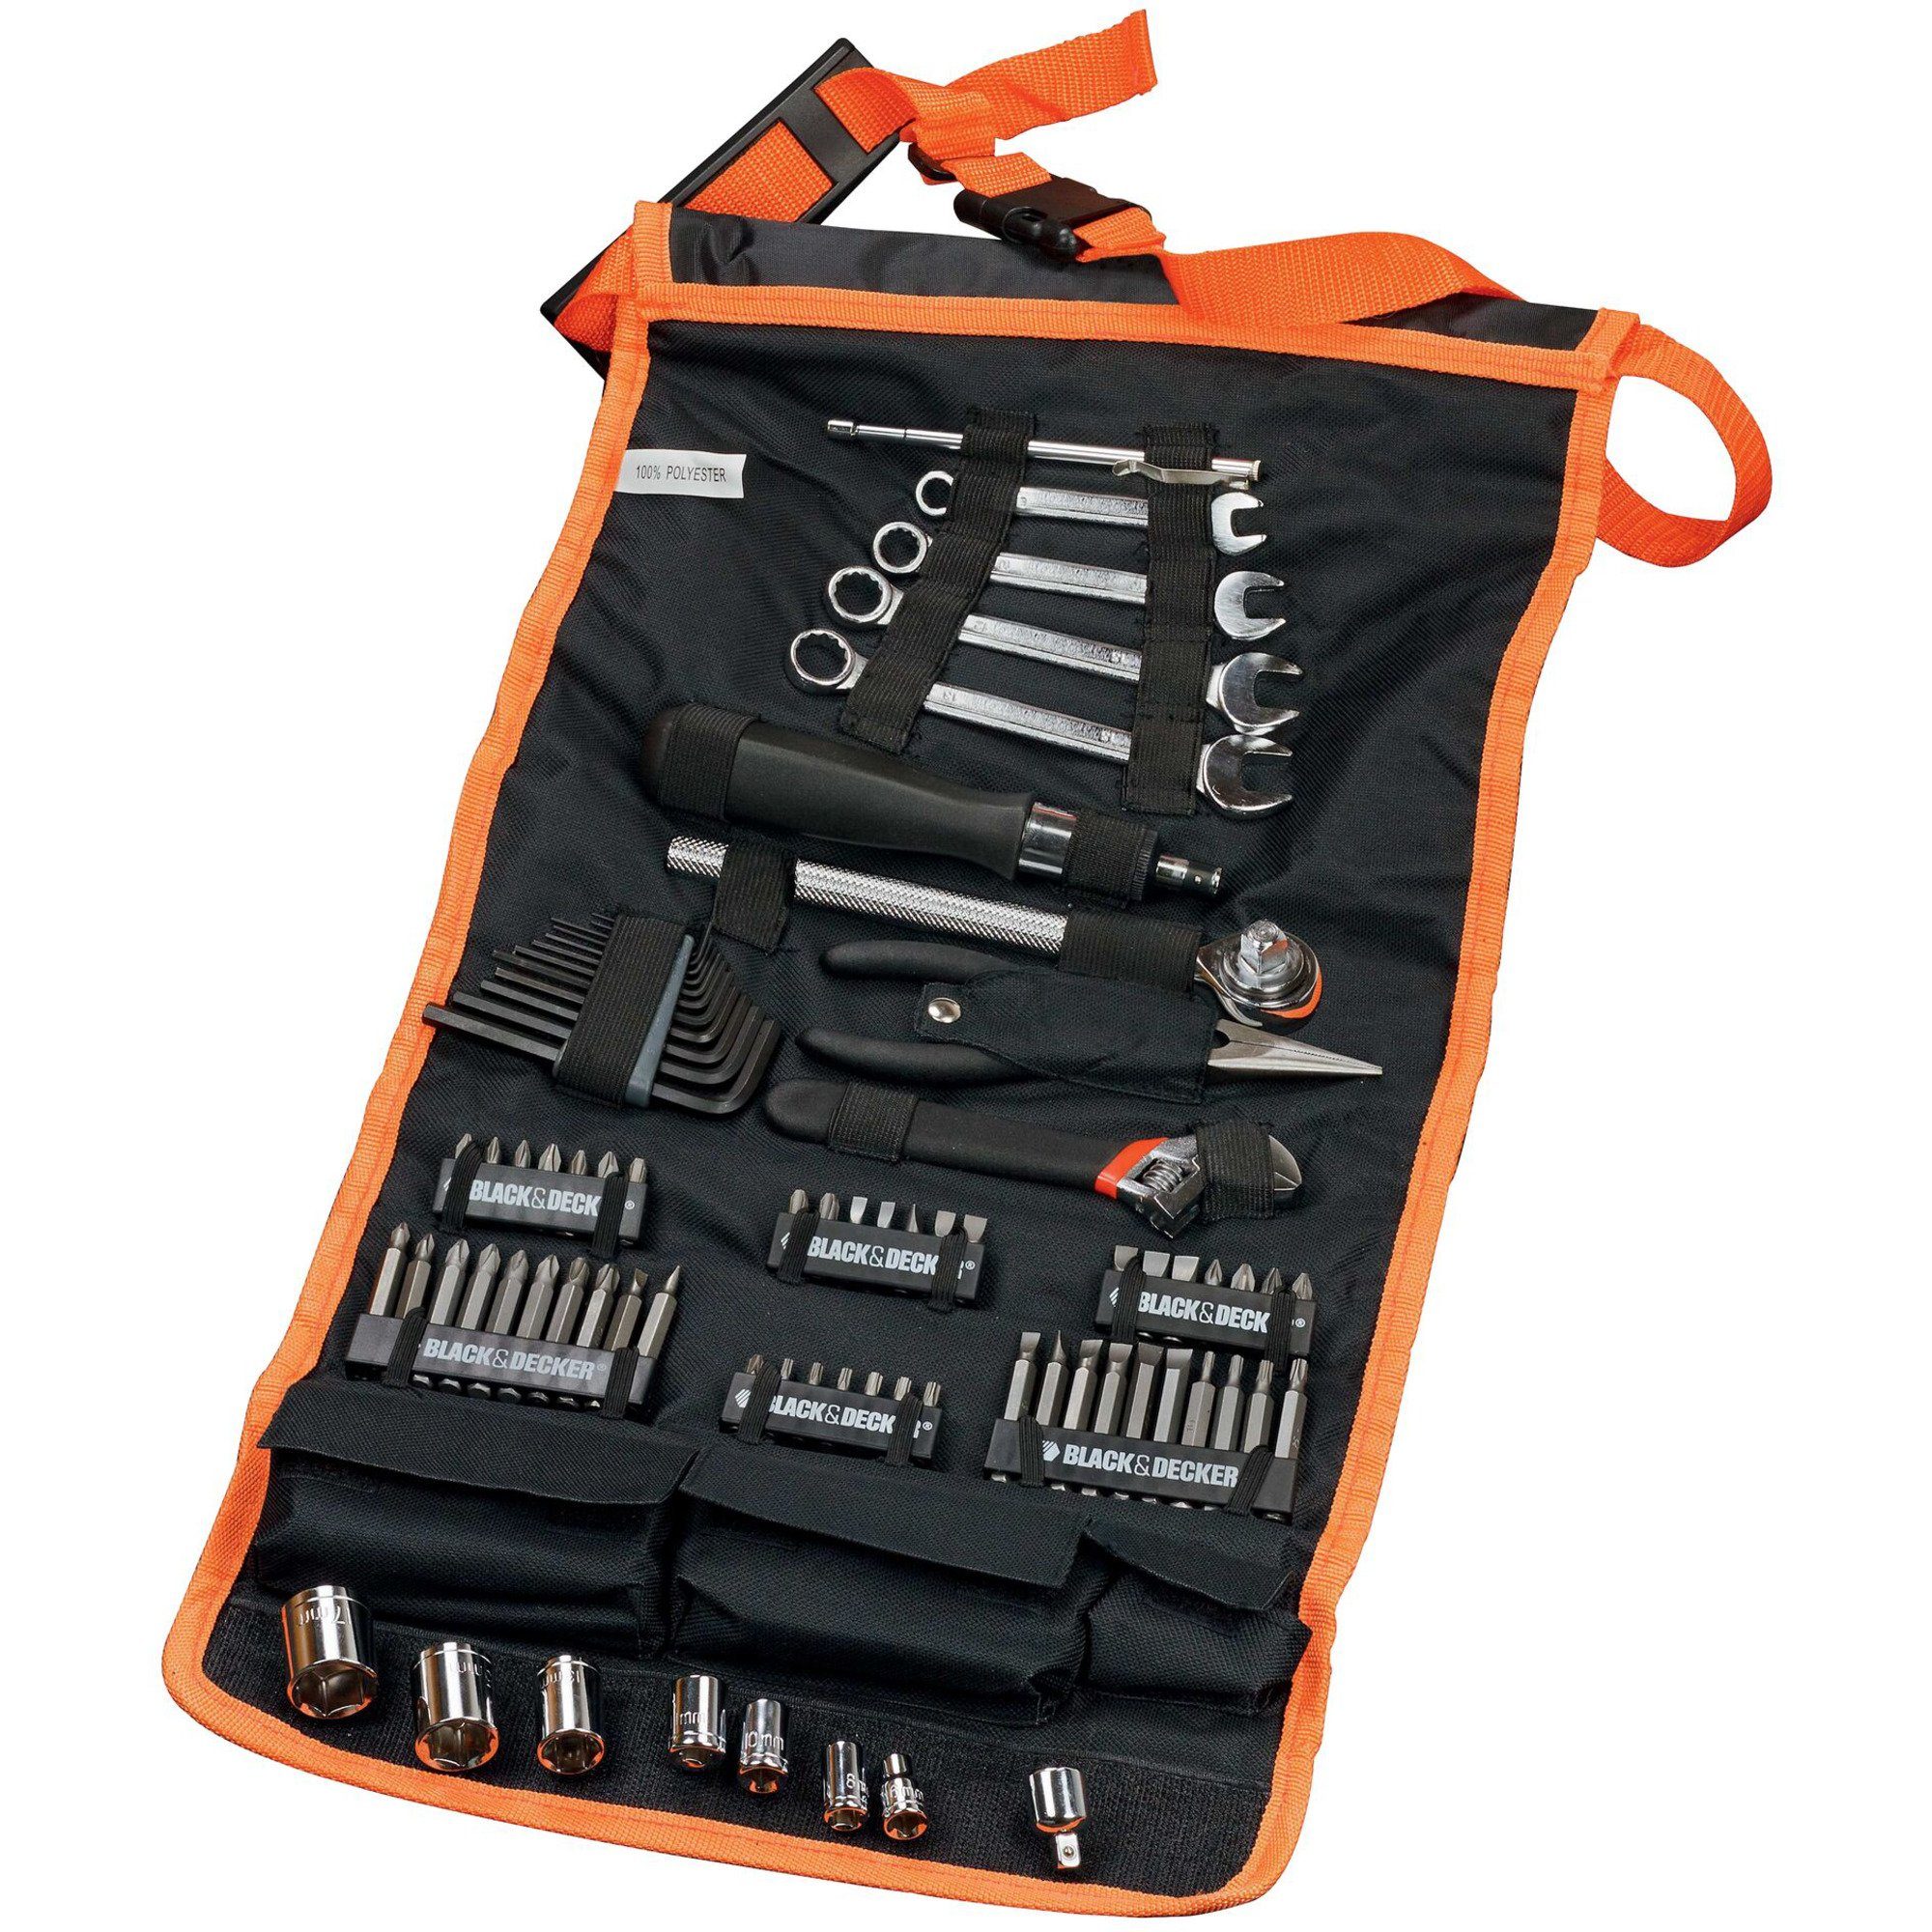 Anzahl Black 76 Decker -teilig Werkzeugset & mit Rolltasche, Teile: Mechaniker-Set BLACK+DECKER